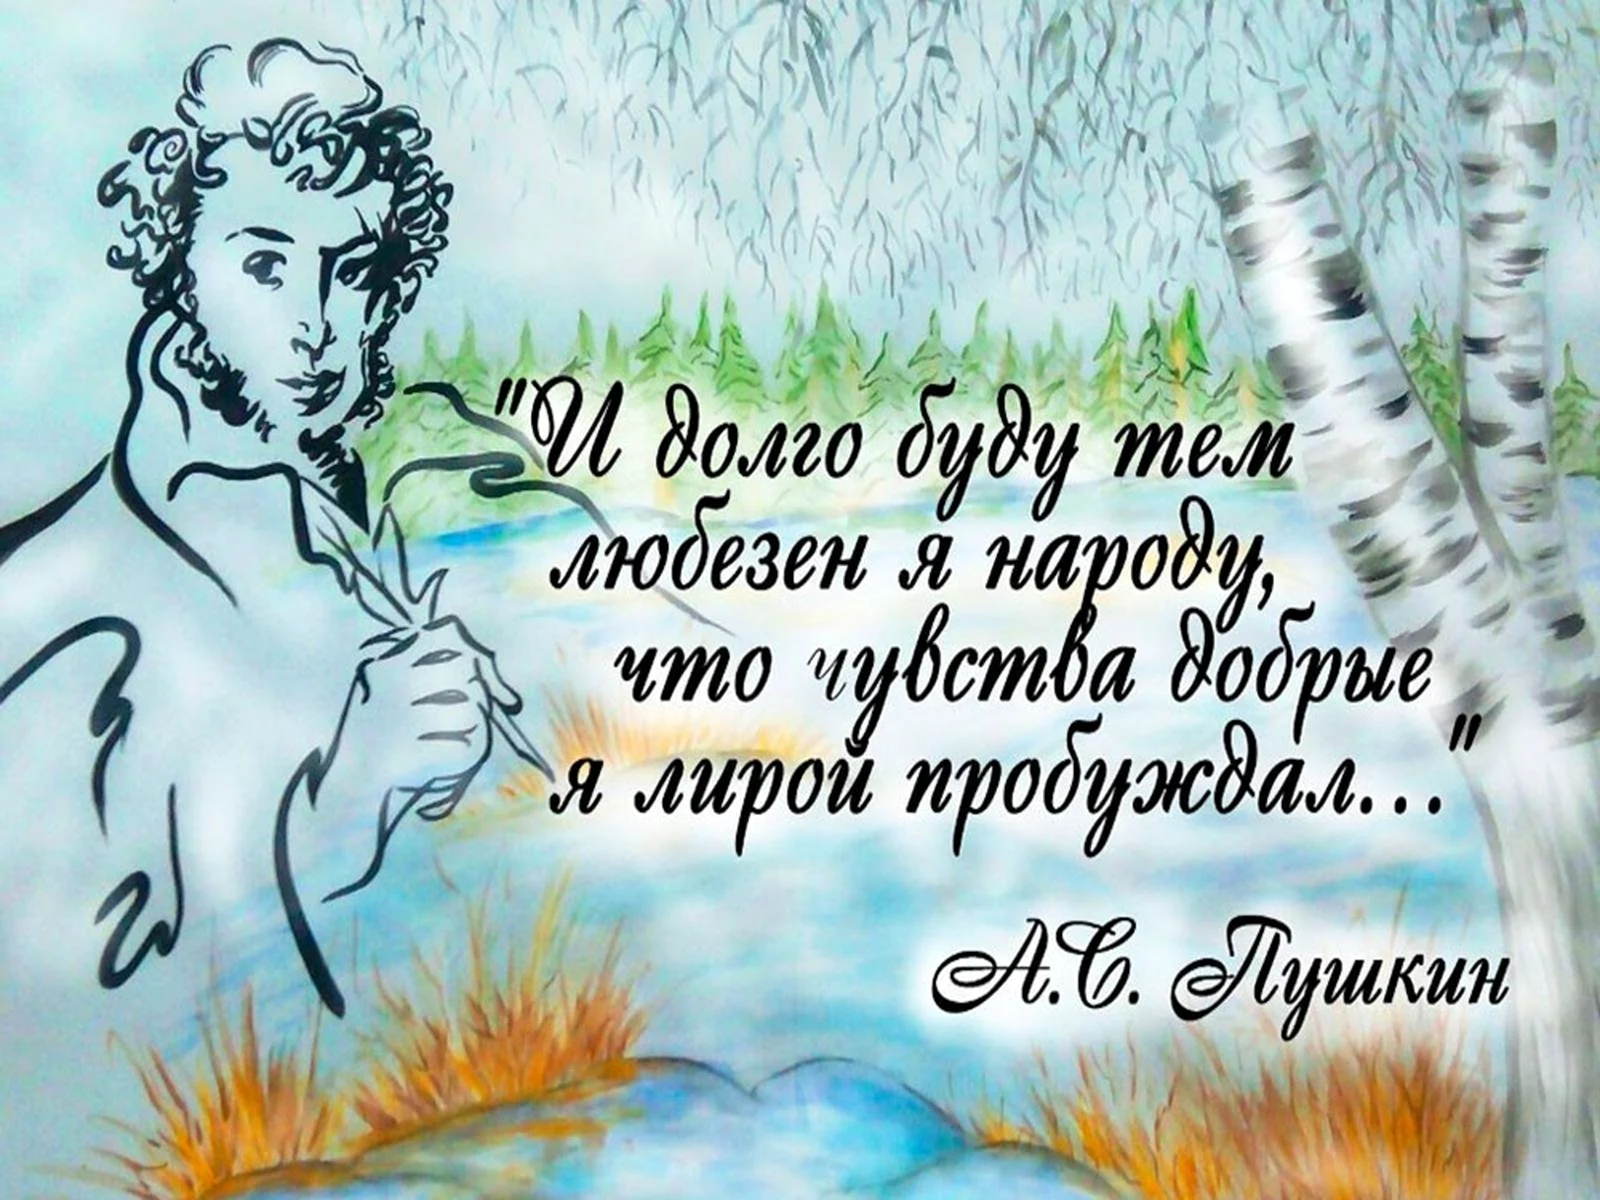 Пушкин 6 июня